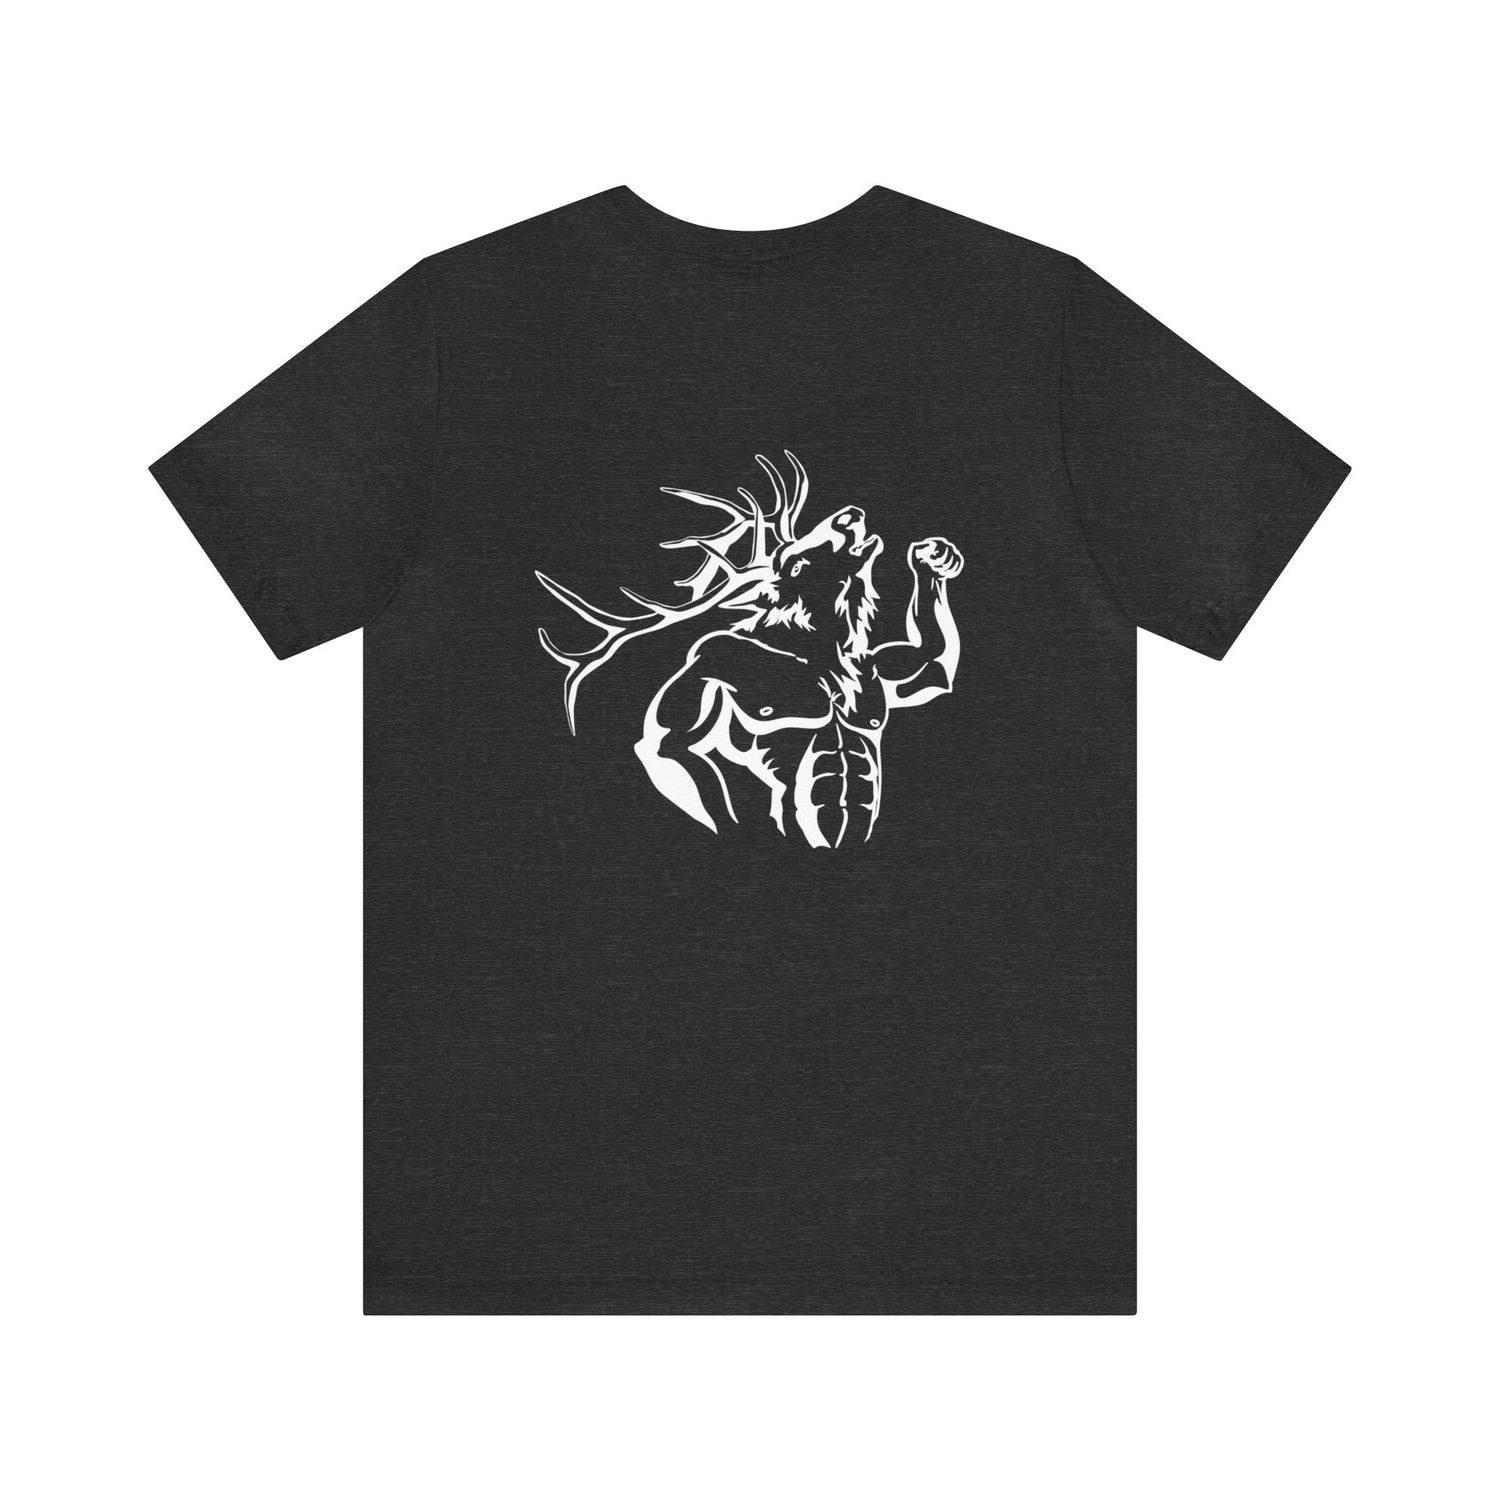 Western elk hunting t-shirt, color dark grey, back design placement